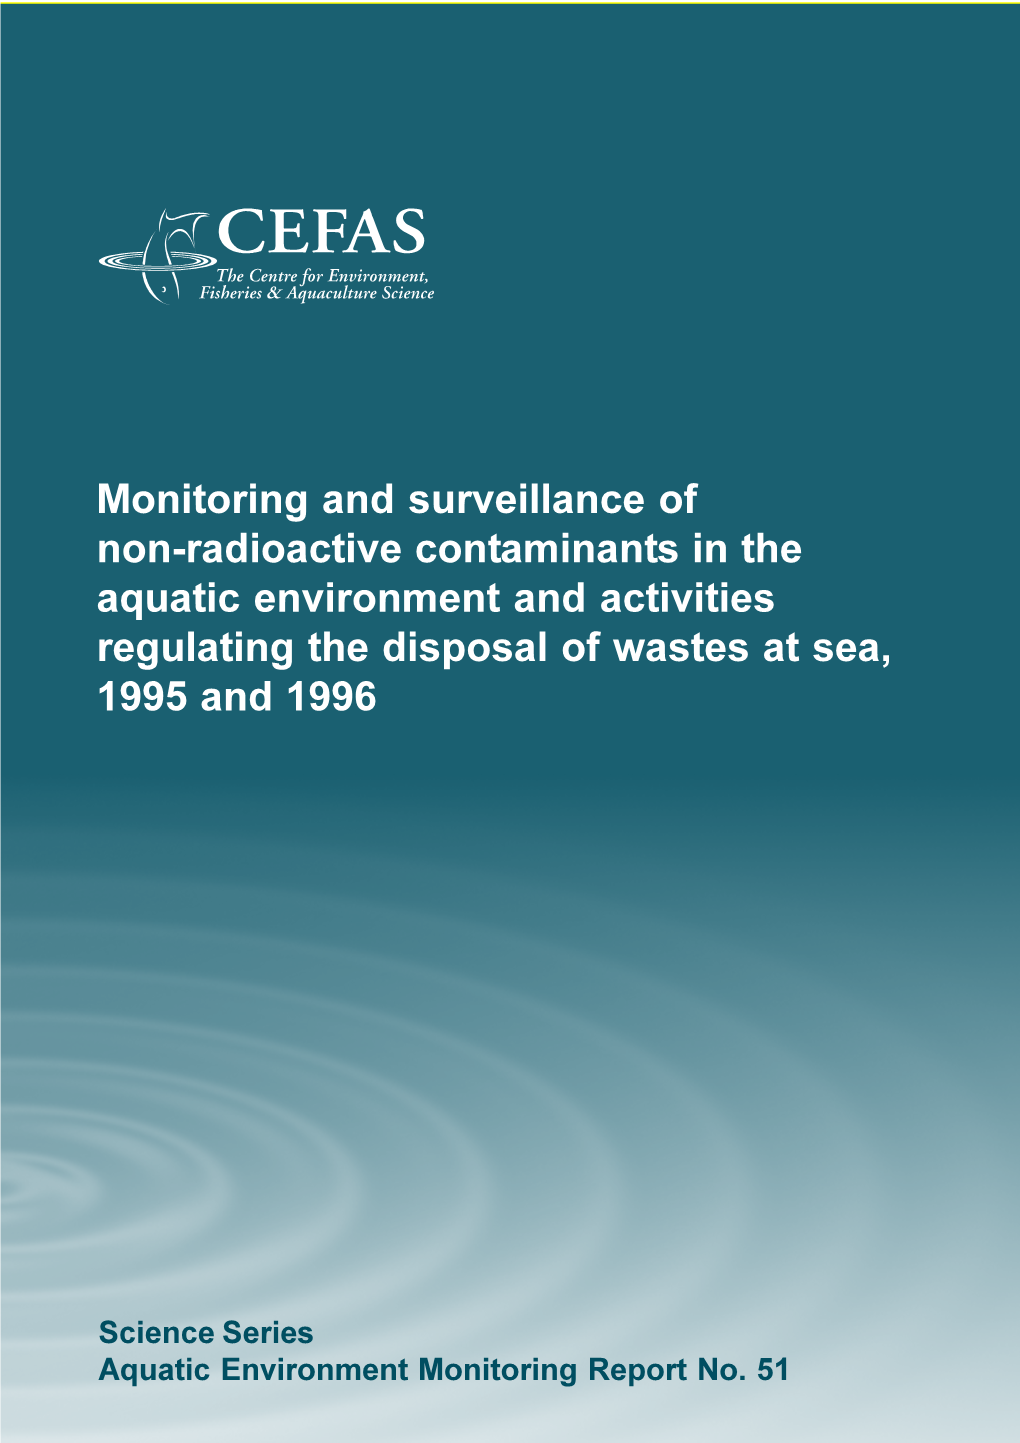 Monitoring and Surveillance of Non-Radioactive Contaminants in the Aquatic Environment and Activities Regulating the Disposal of Wastes at Sea, 1995 and 1996